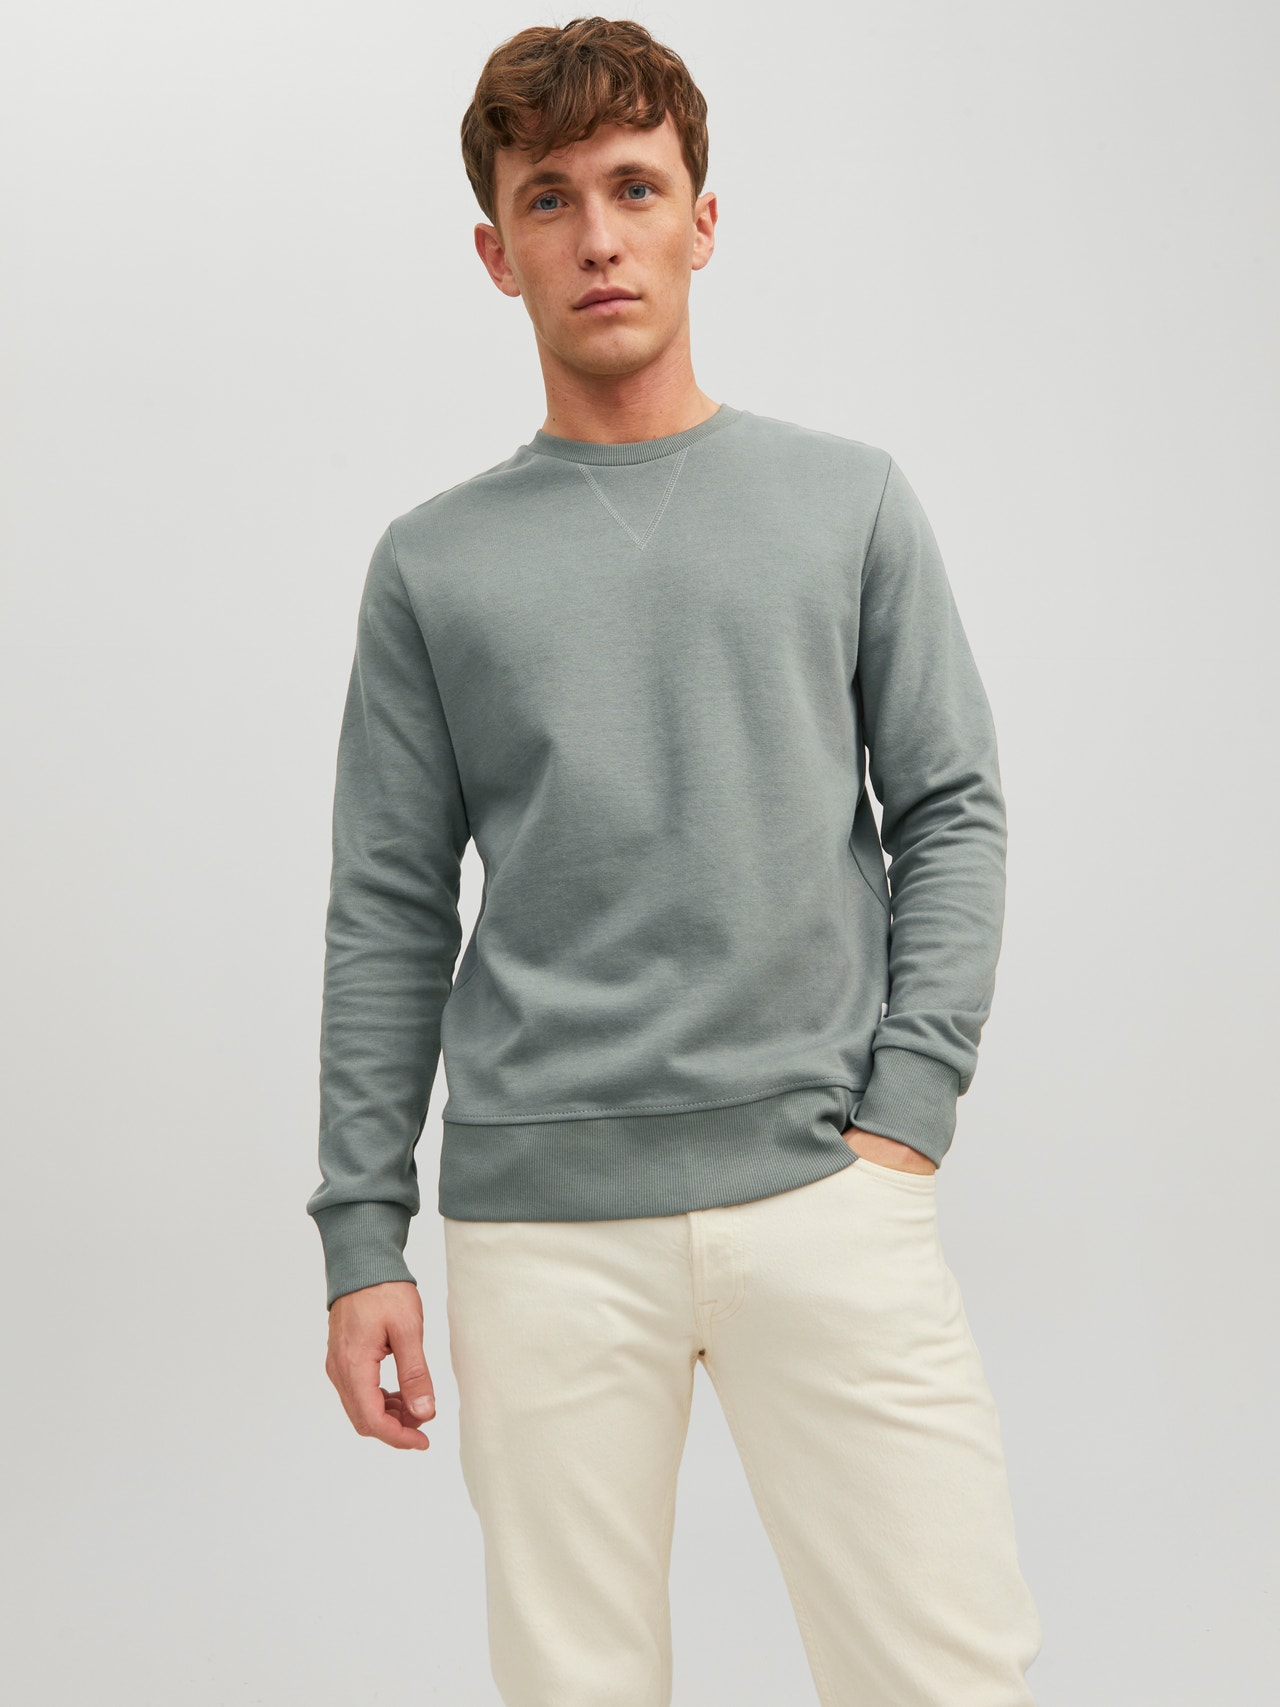 Jack & Jones Plain Sweatshirt -Sedona Sage - 12181903